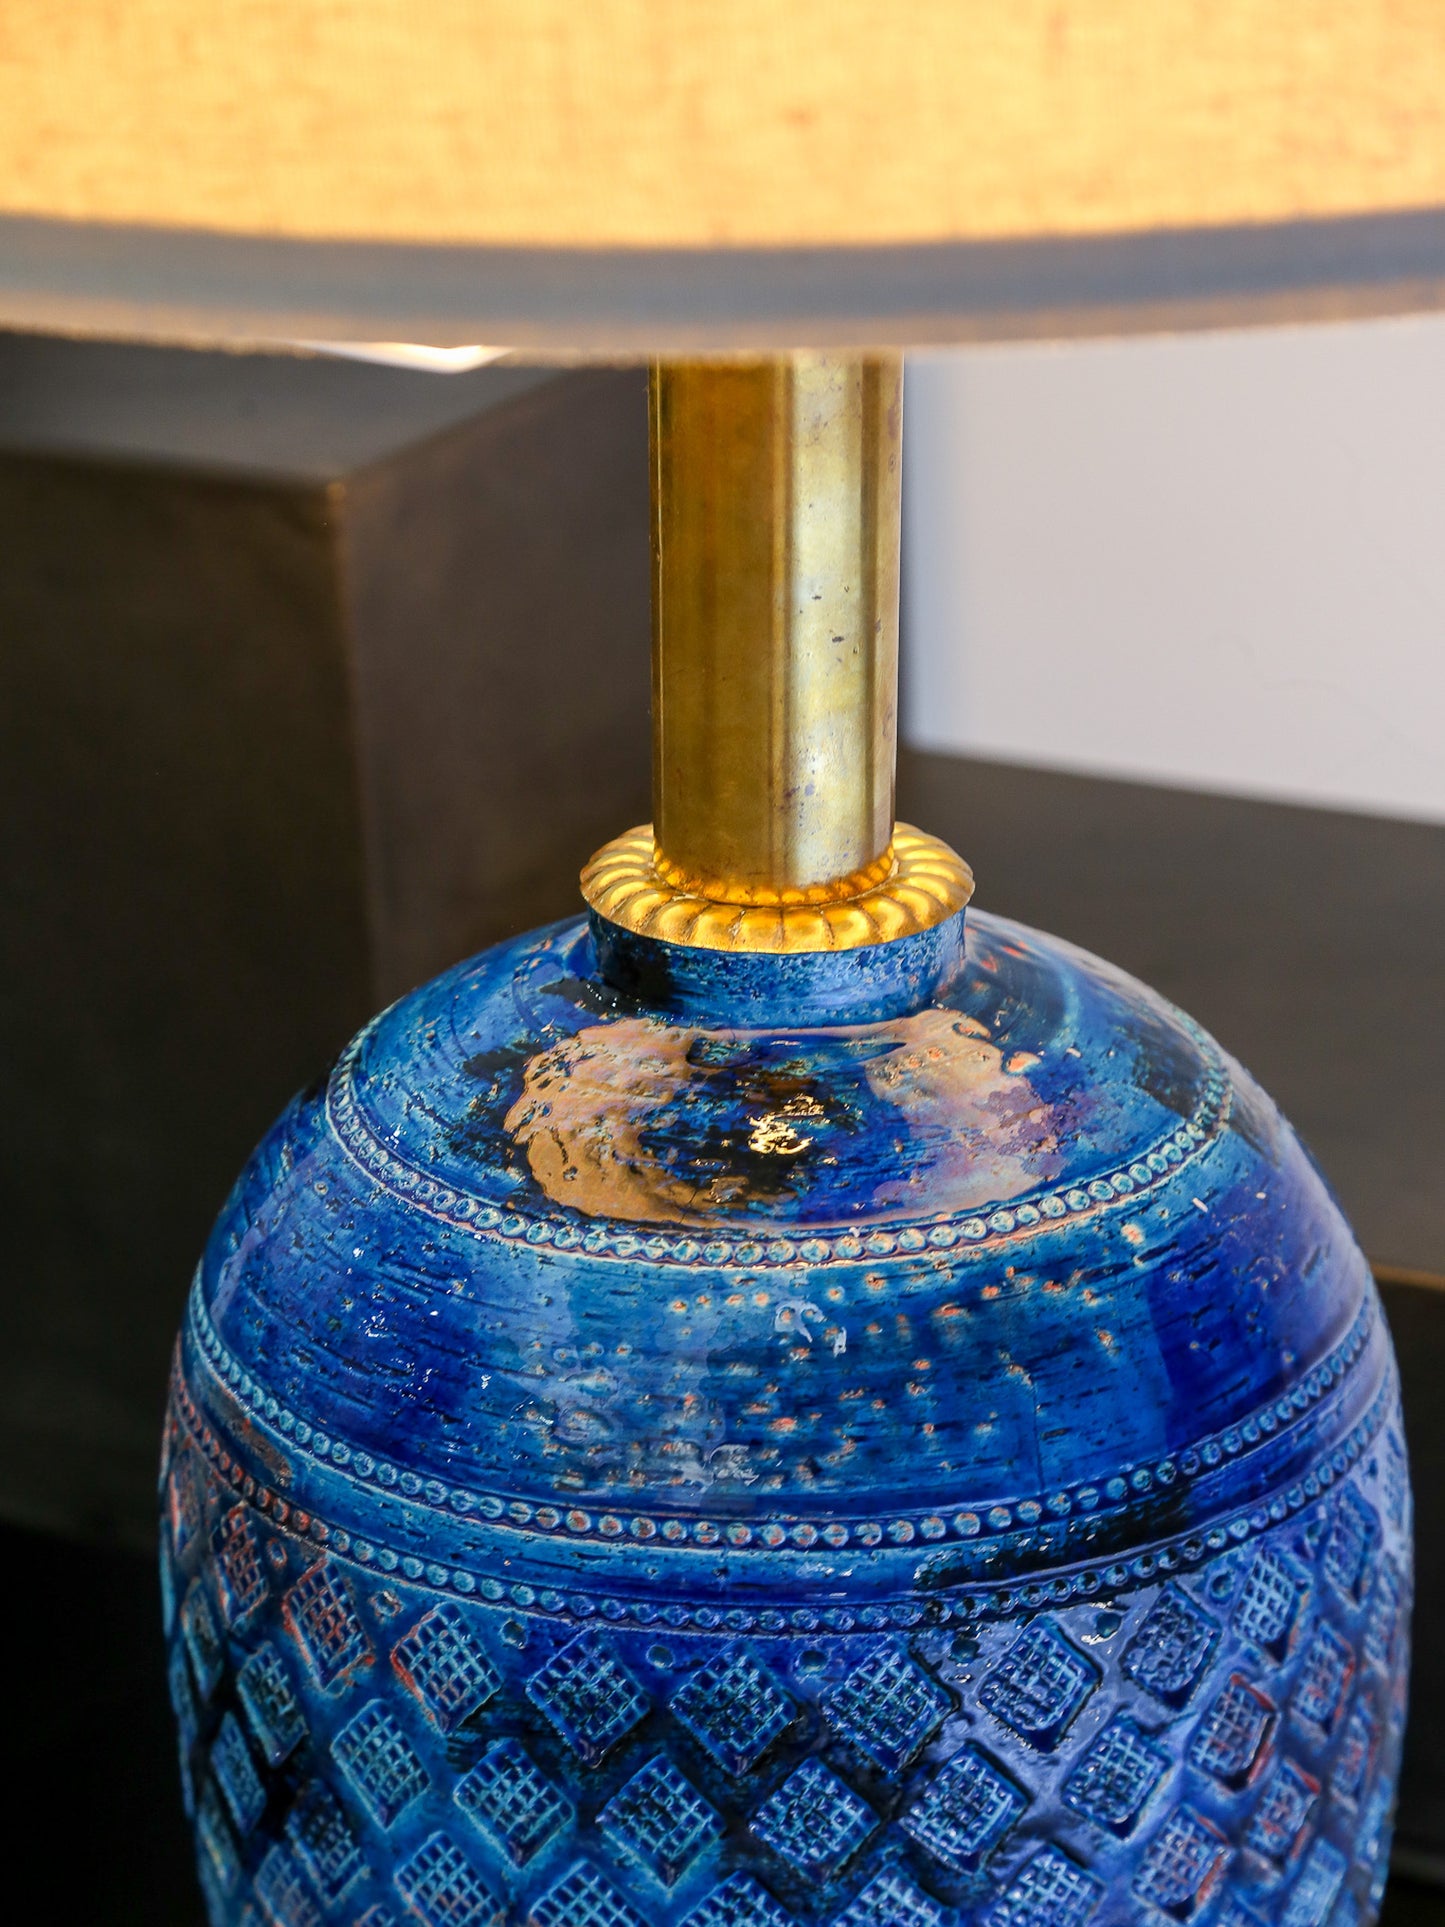 Bitossi Blue Rimini Table Lamp